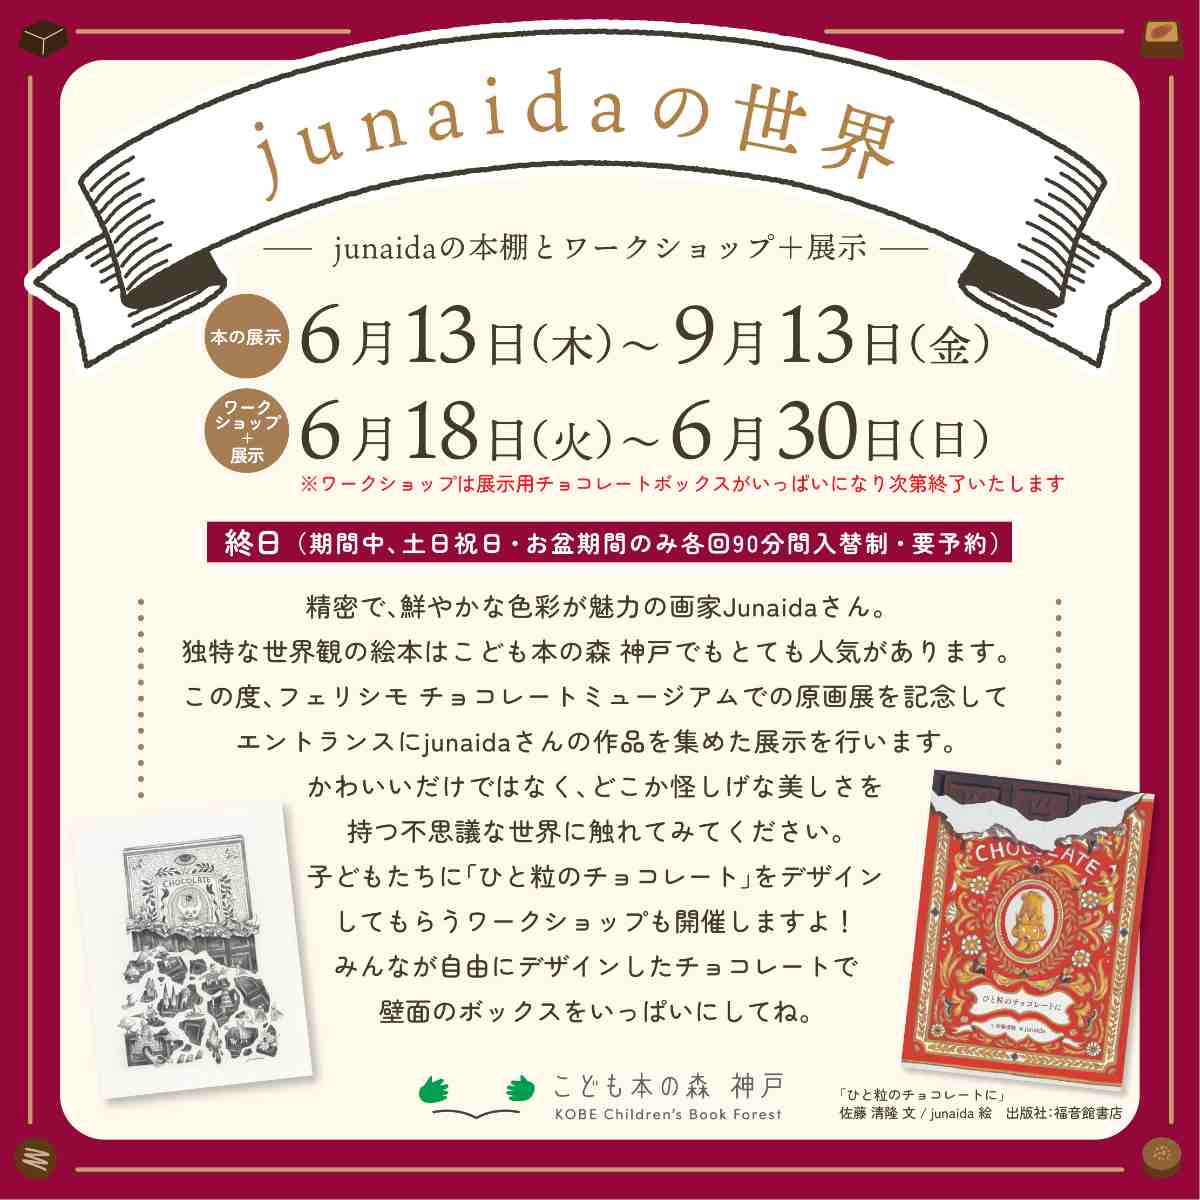 こども本の森 神戸で「junaidaの世界ーjunaidaの本棚とワークショップ＋展示ー」開催中　神戸市 [画像]